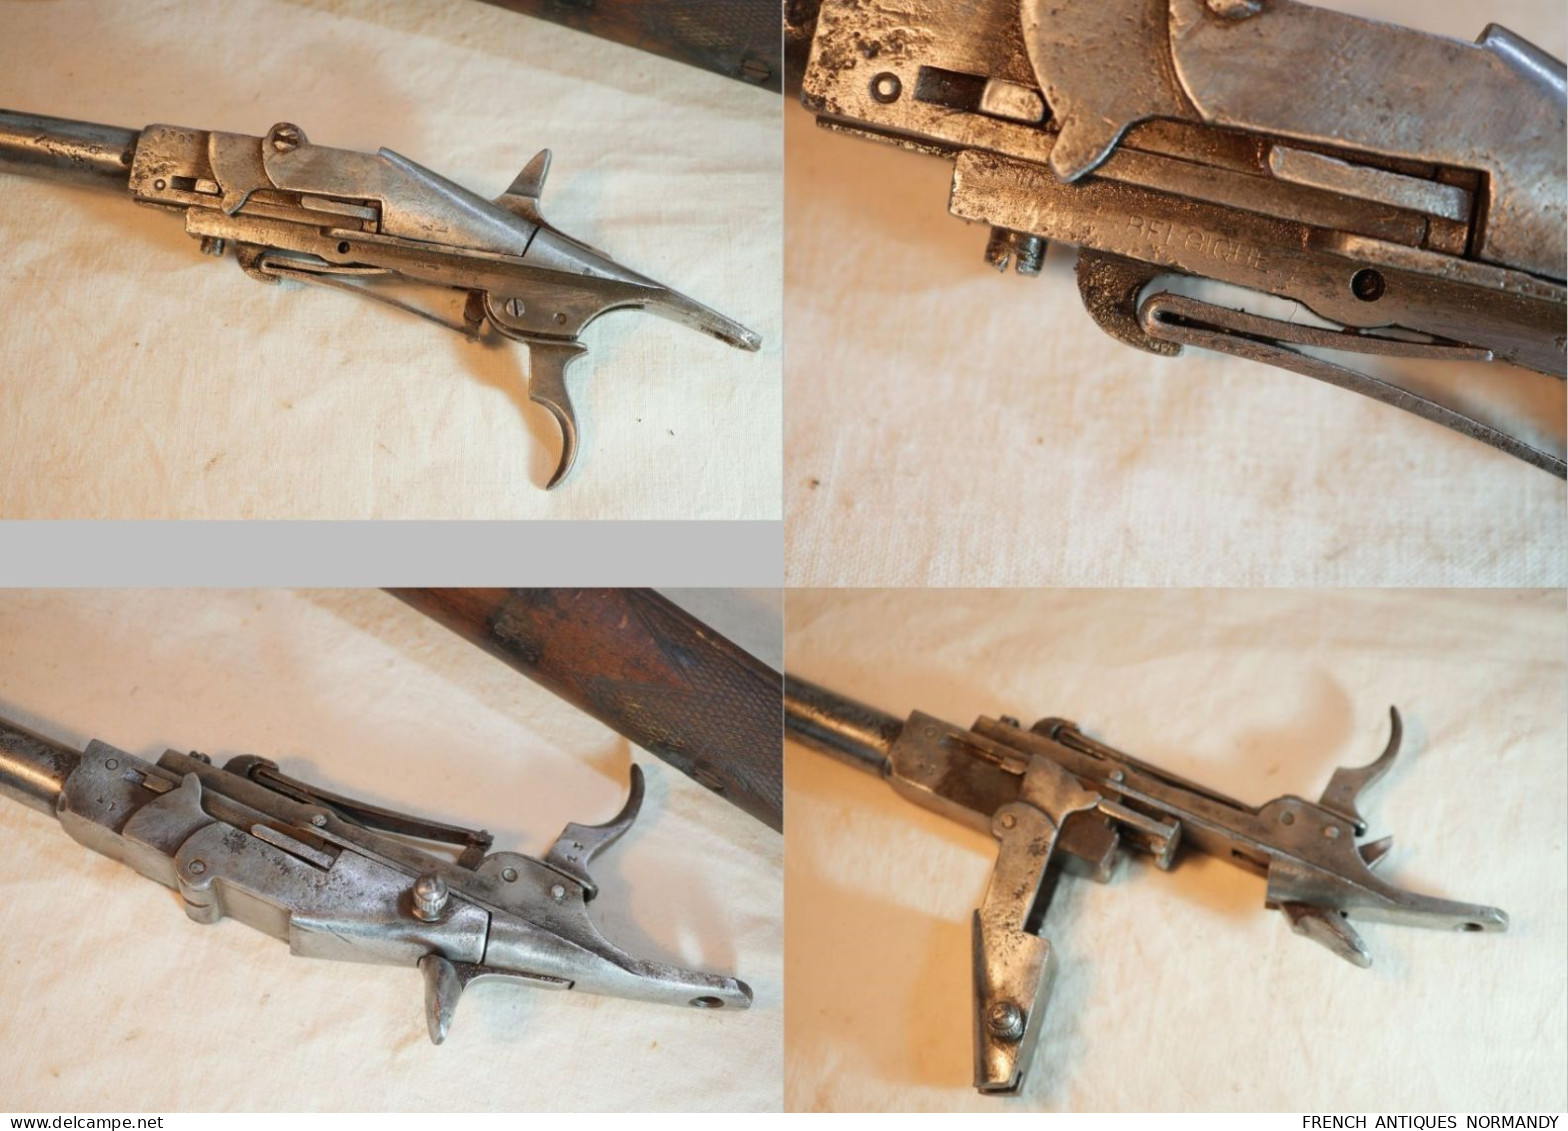 Carabine Warnant avant 1870 9mm bloc coulissant à percussion centrale et chien externe XIX ième